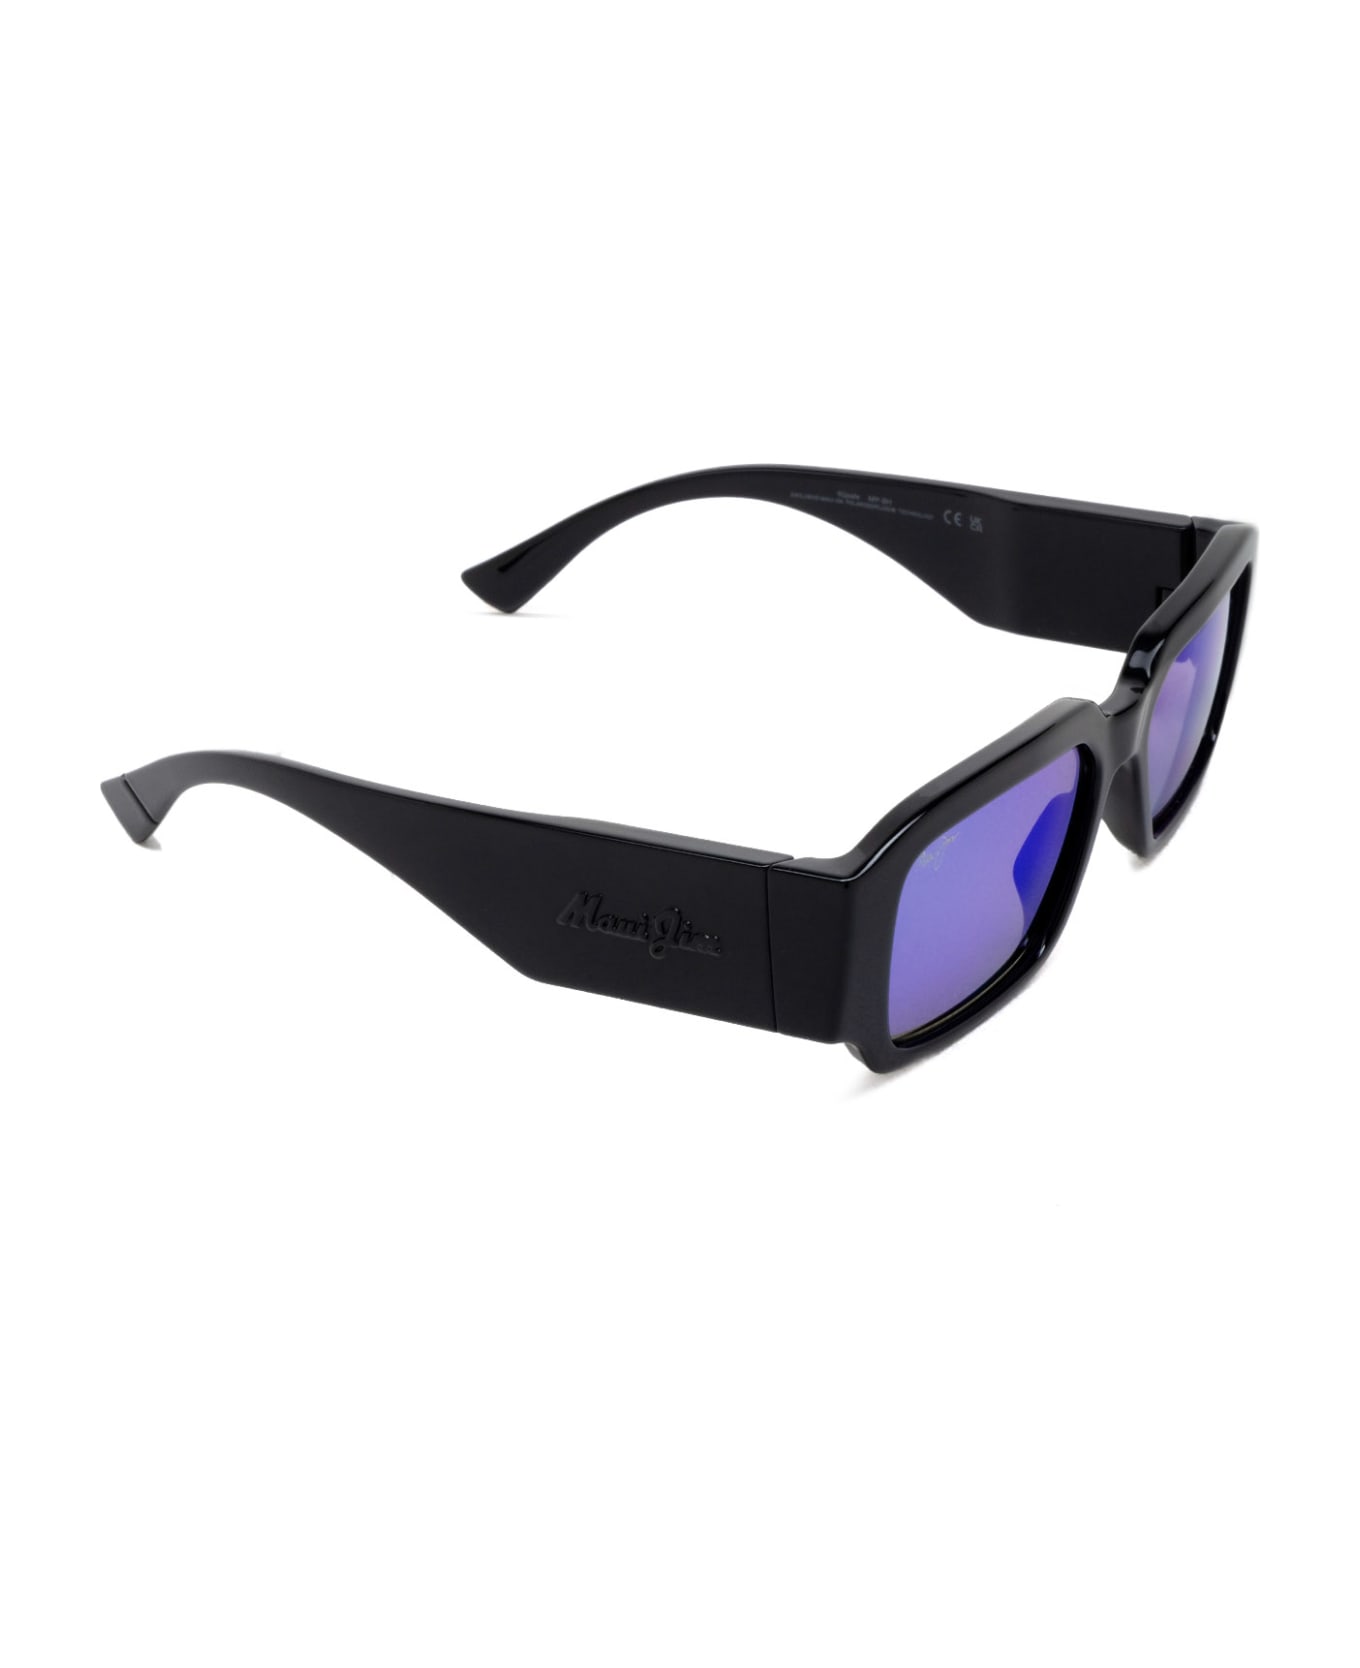 Maui Jim Mj639 Shiny Black Sunglasses - Shiny Black